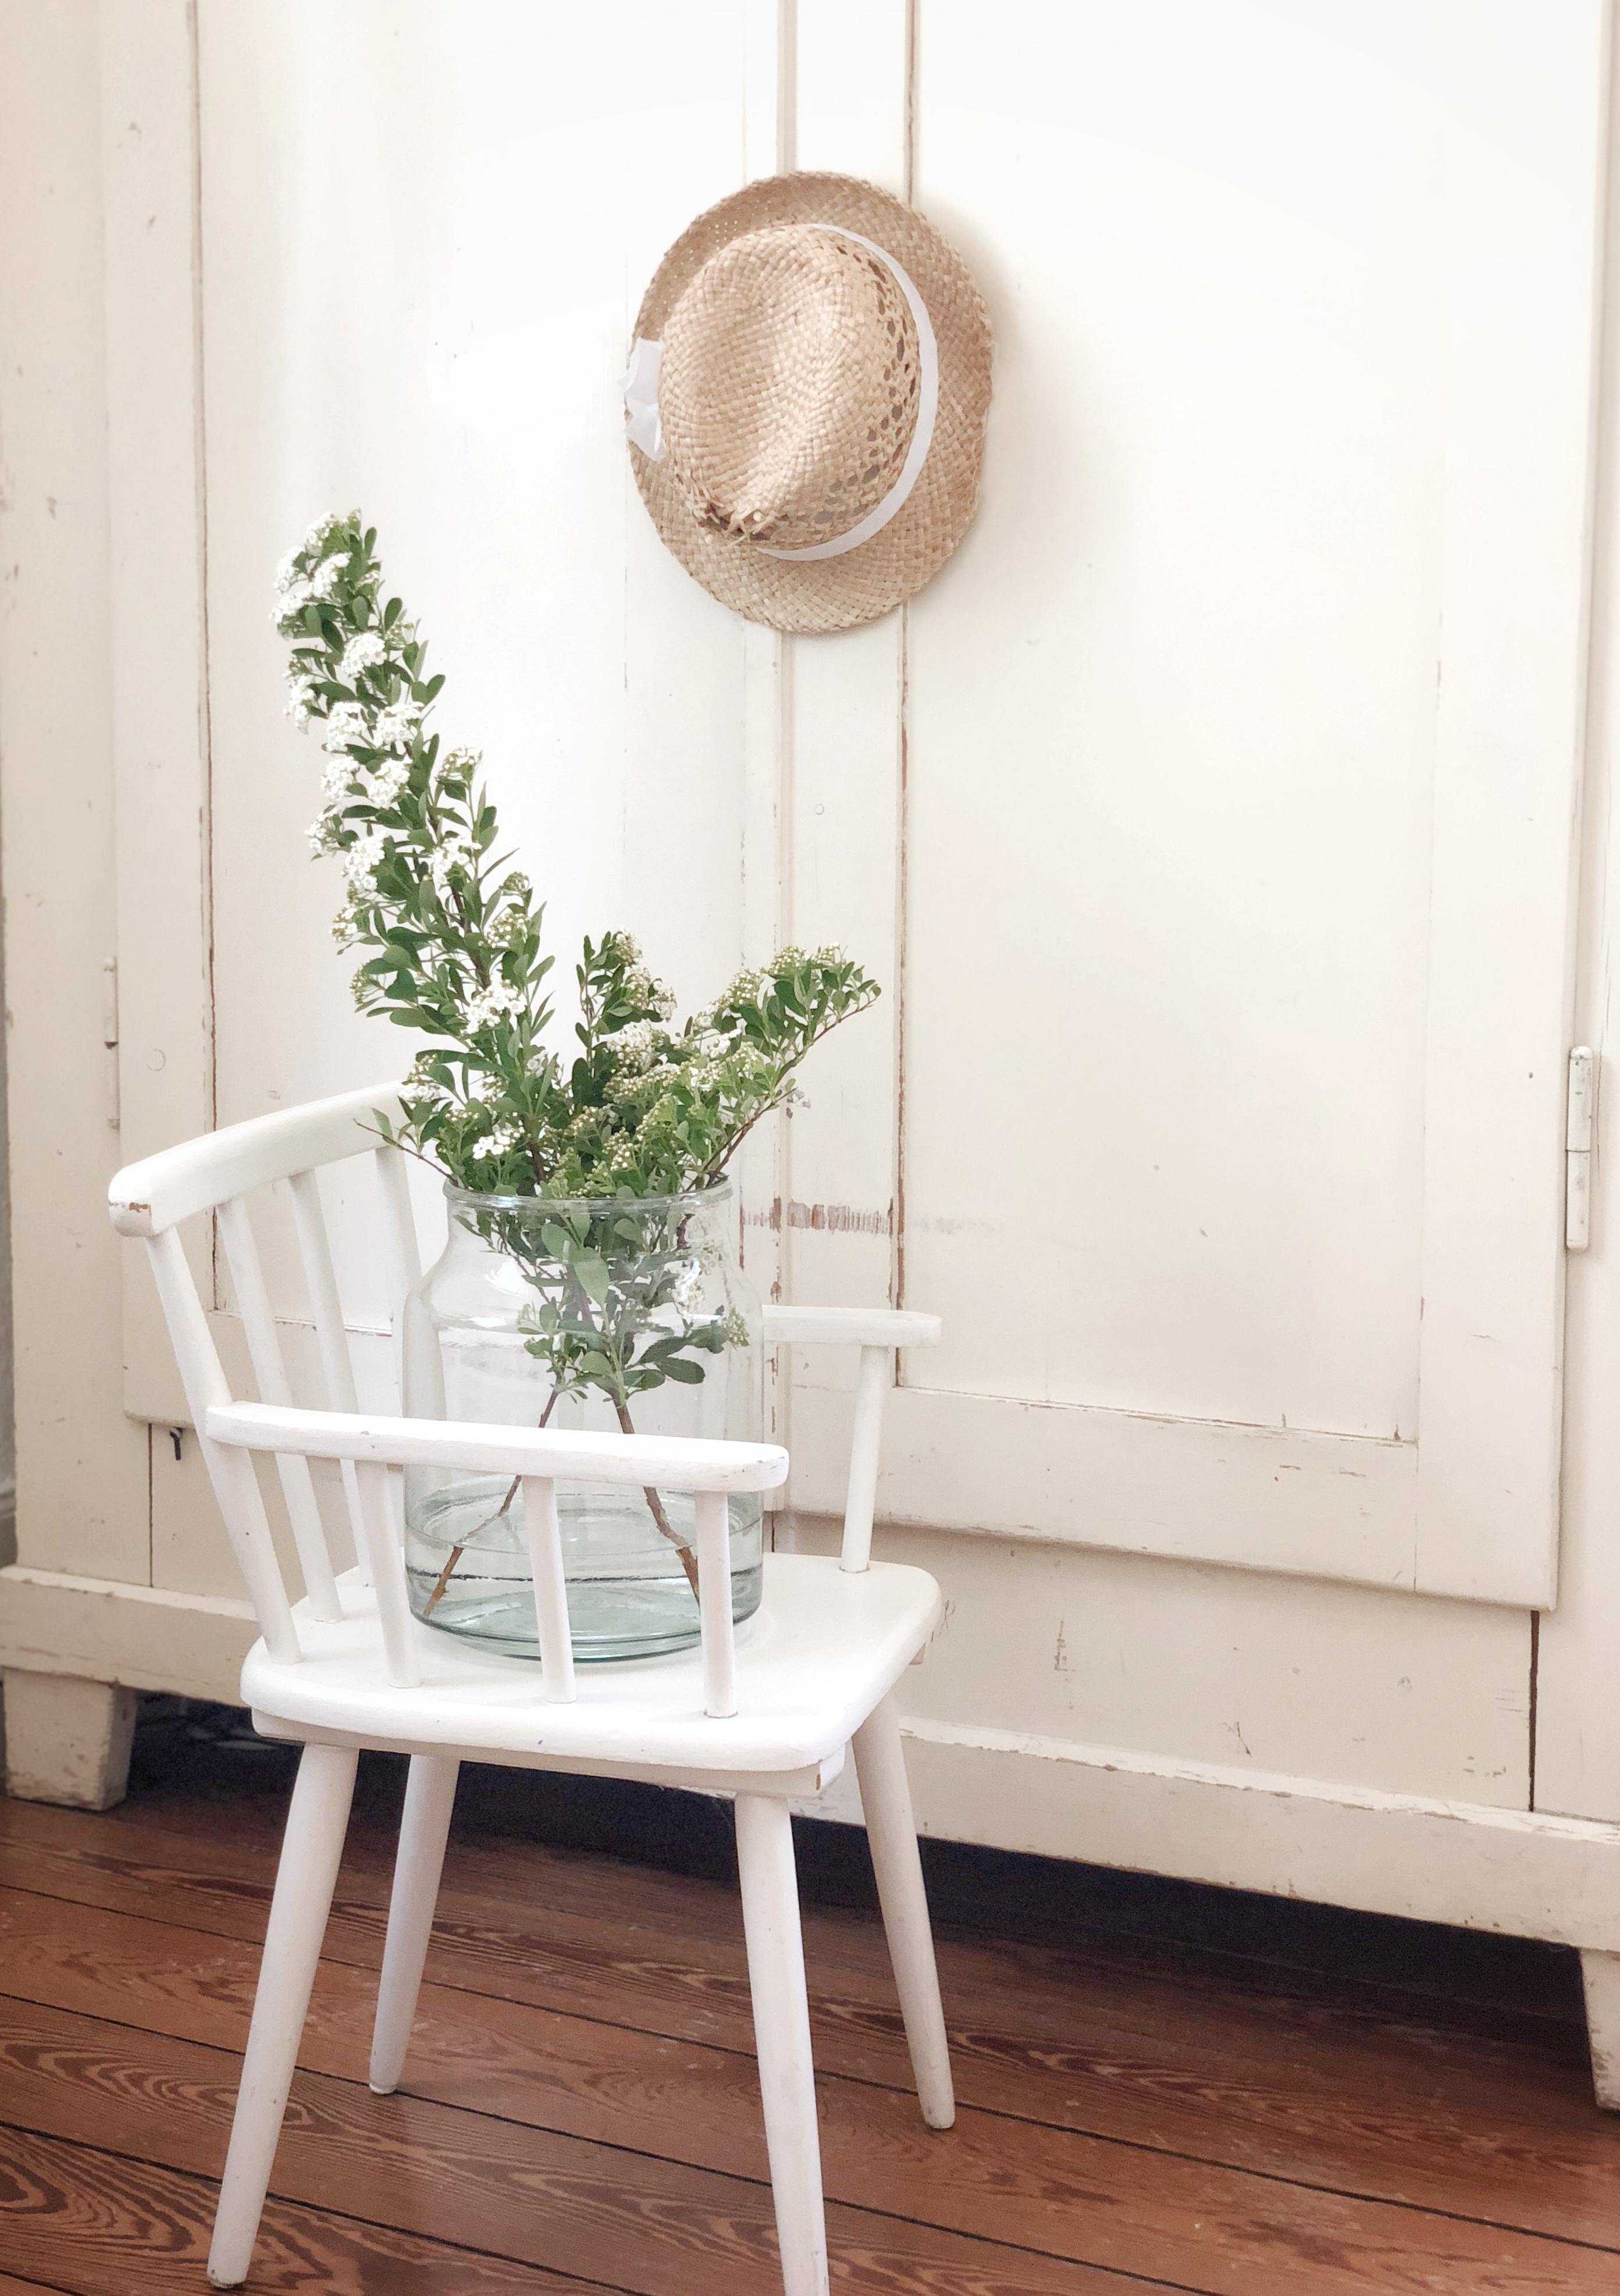 #flowers#altbauliebe#minimalism#whitehome#whiteinterior